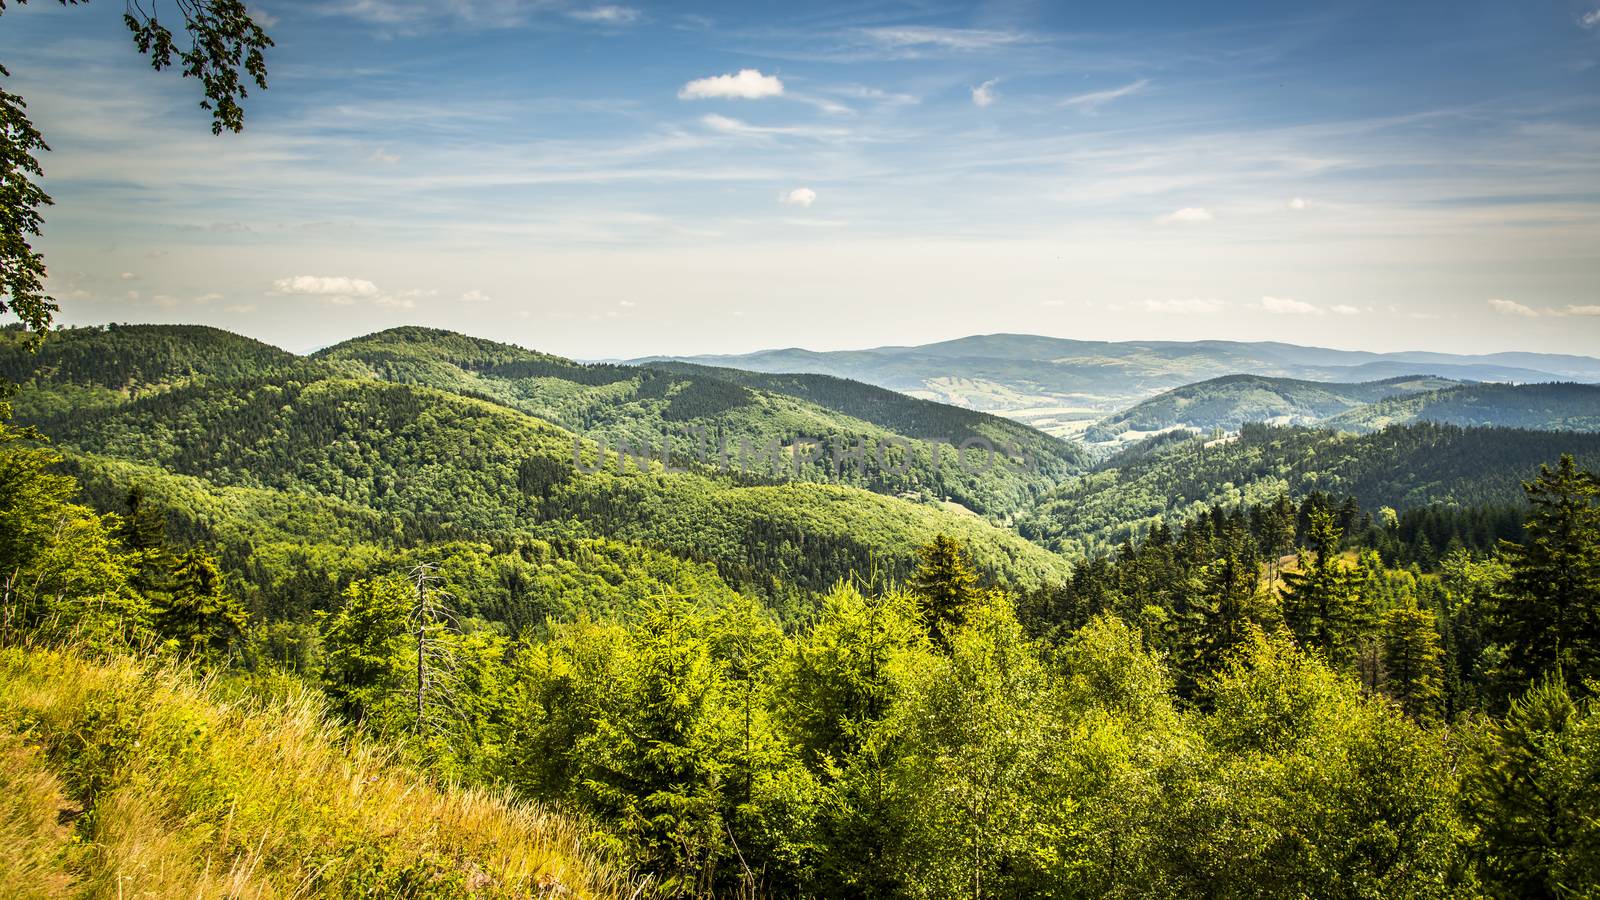 View from Waligora on Suche Mountains, Poland